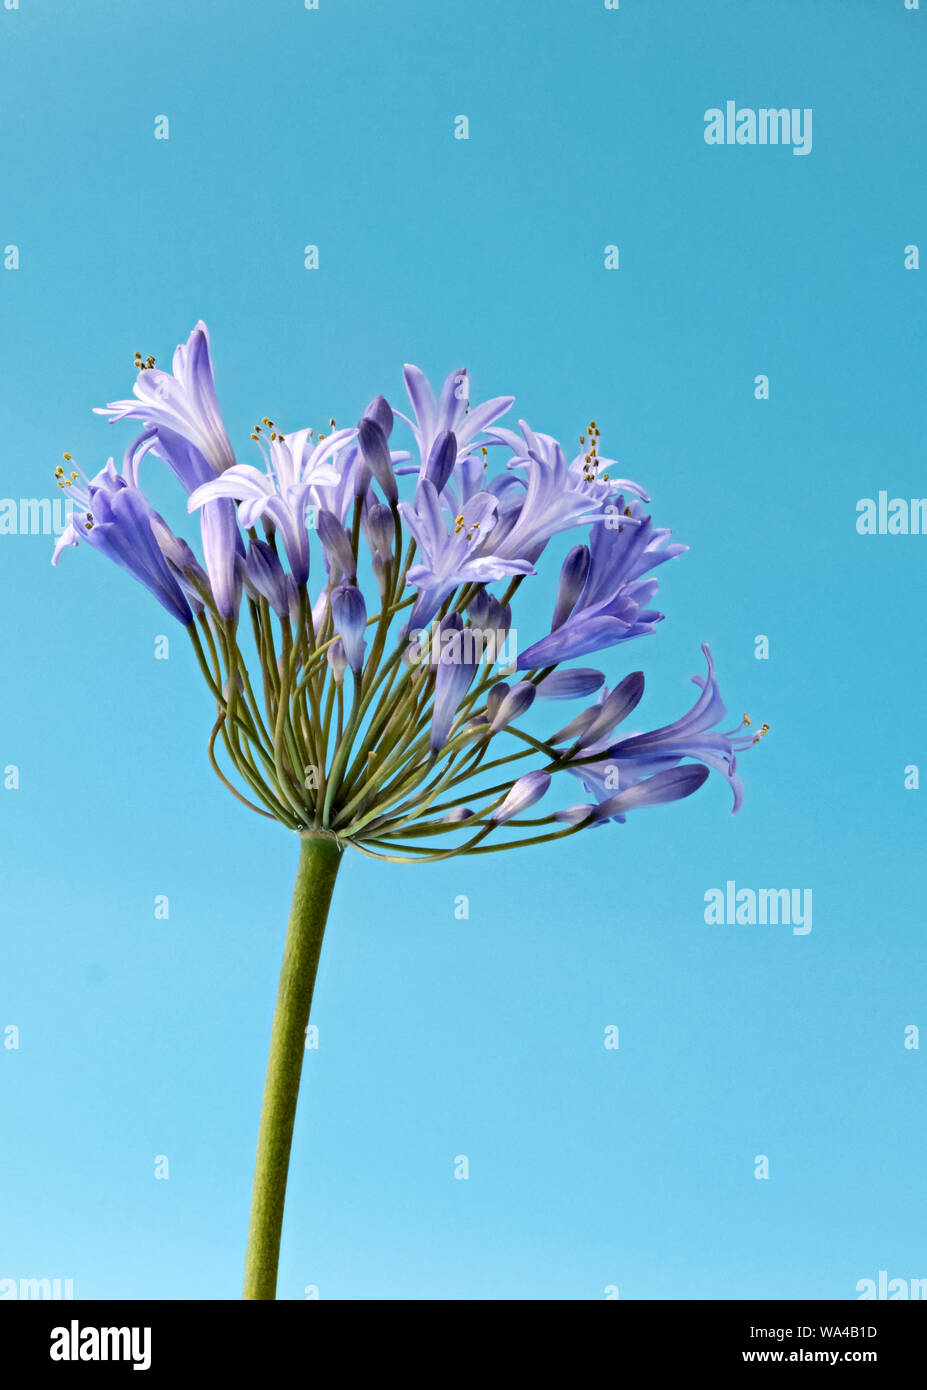 De belles fleurs en forme d'étoile bleu Agapanthus photographié sur un fond bleu lumineux Banque D'Images